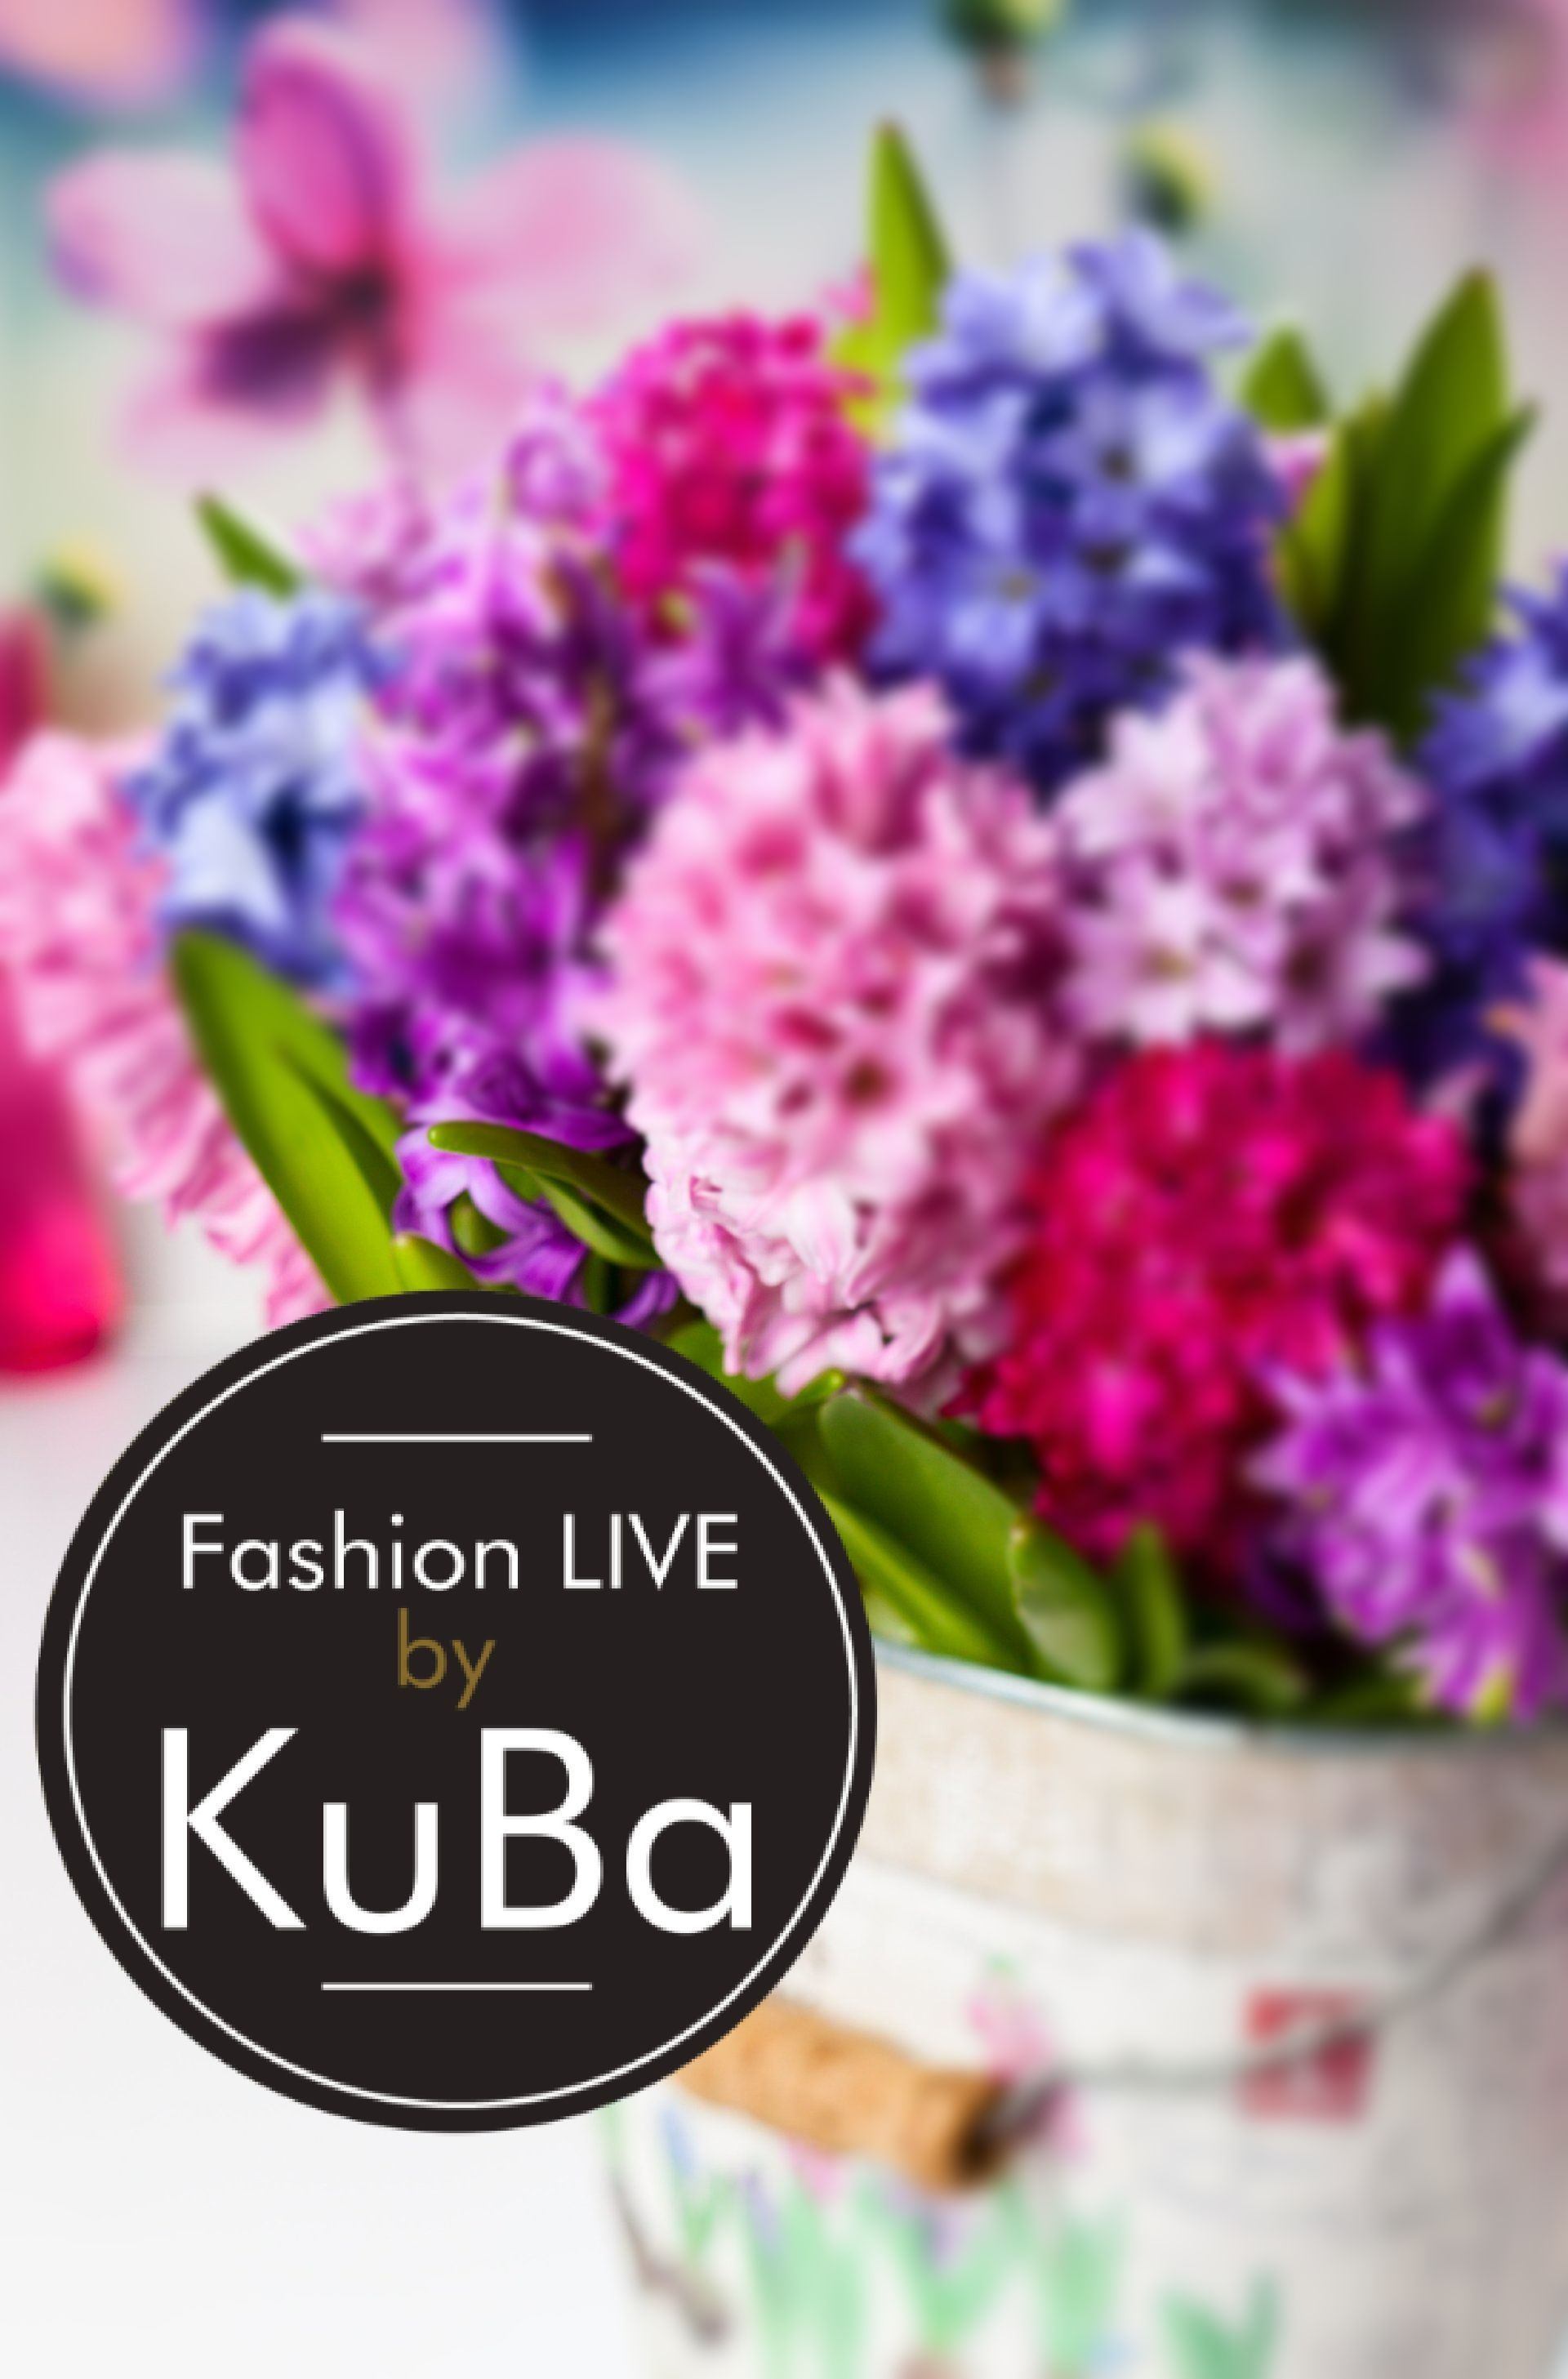 Blumen in den Farben Flieder Pink mit logo KuBa Fashion in Schwarzen Kreis
